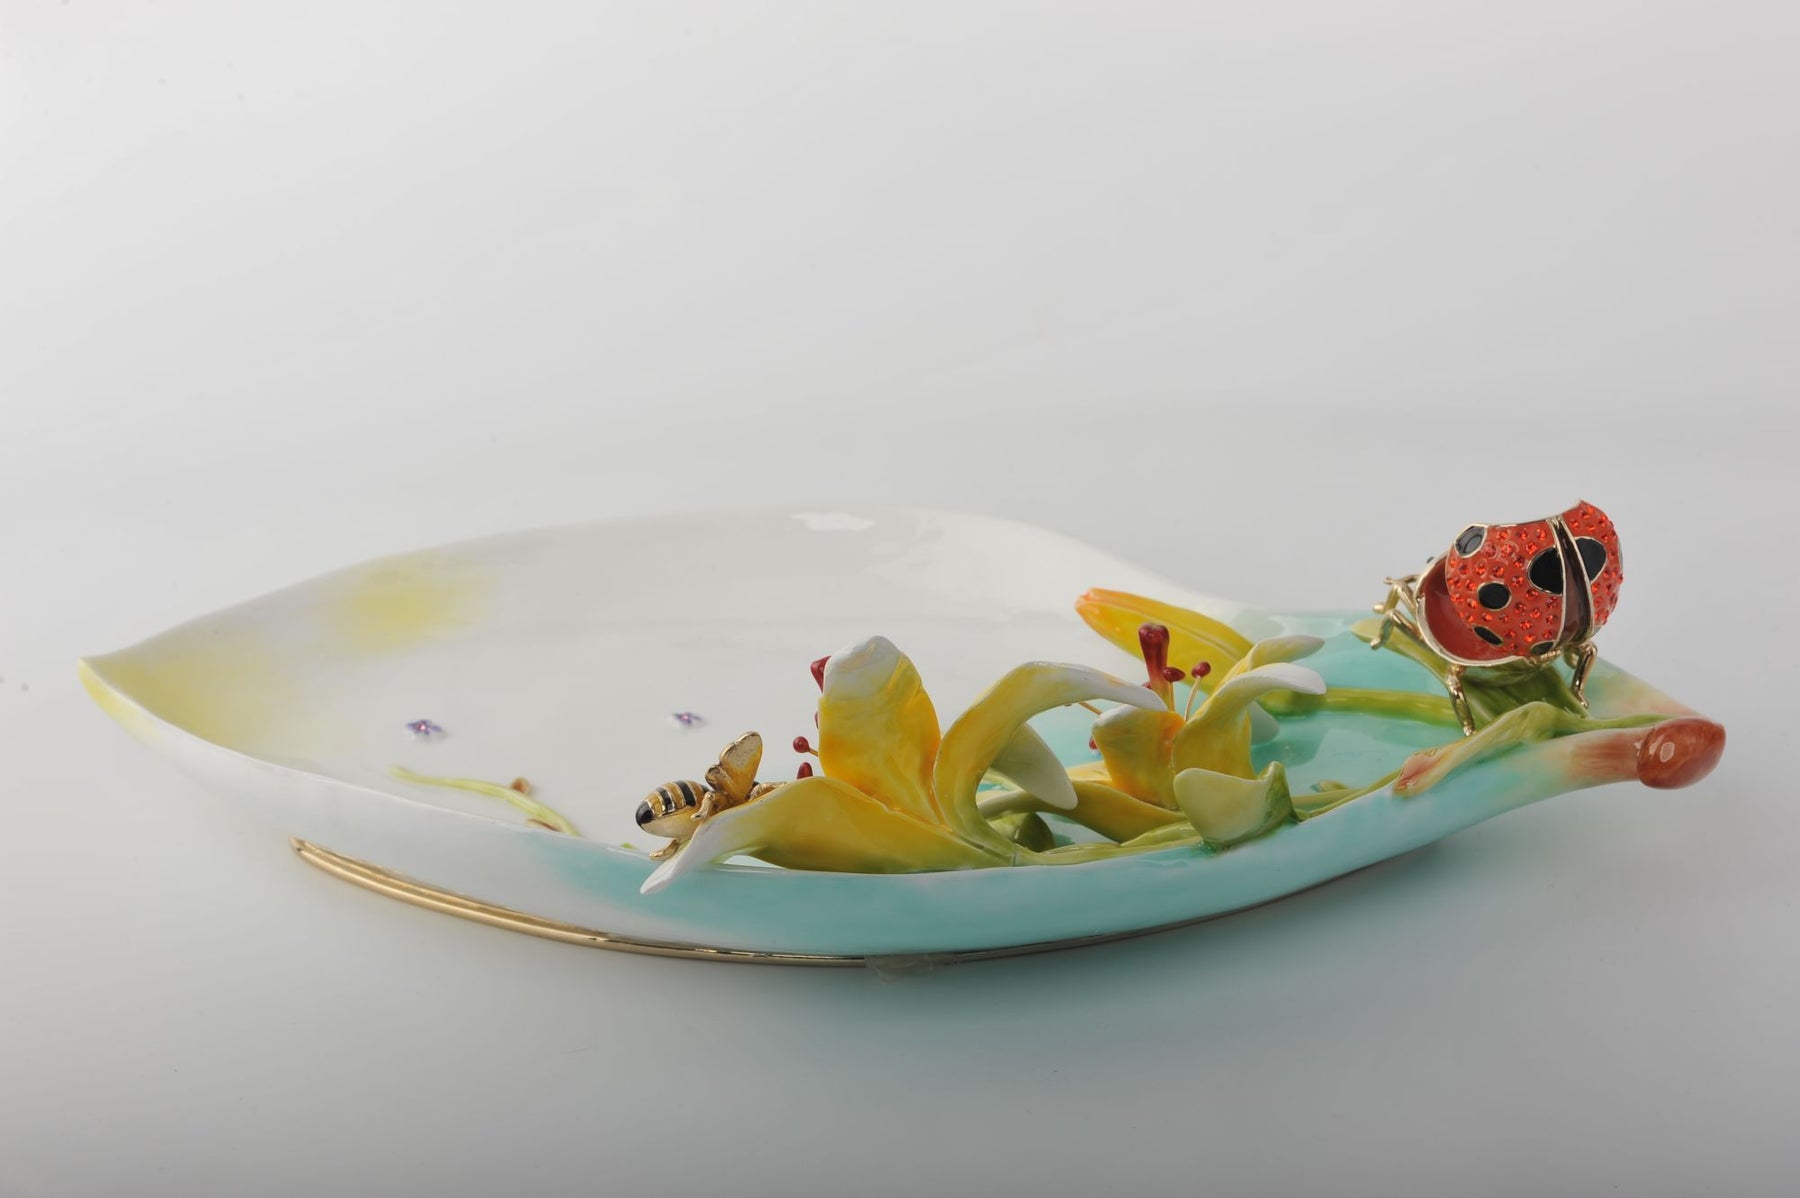 Keren Kopal Trinket Plate with Ladybug  215.00